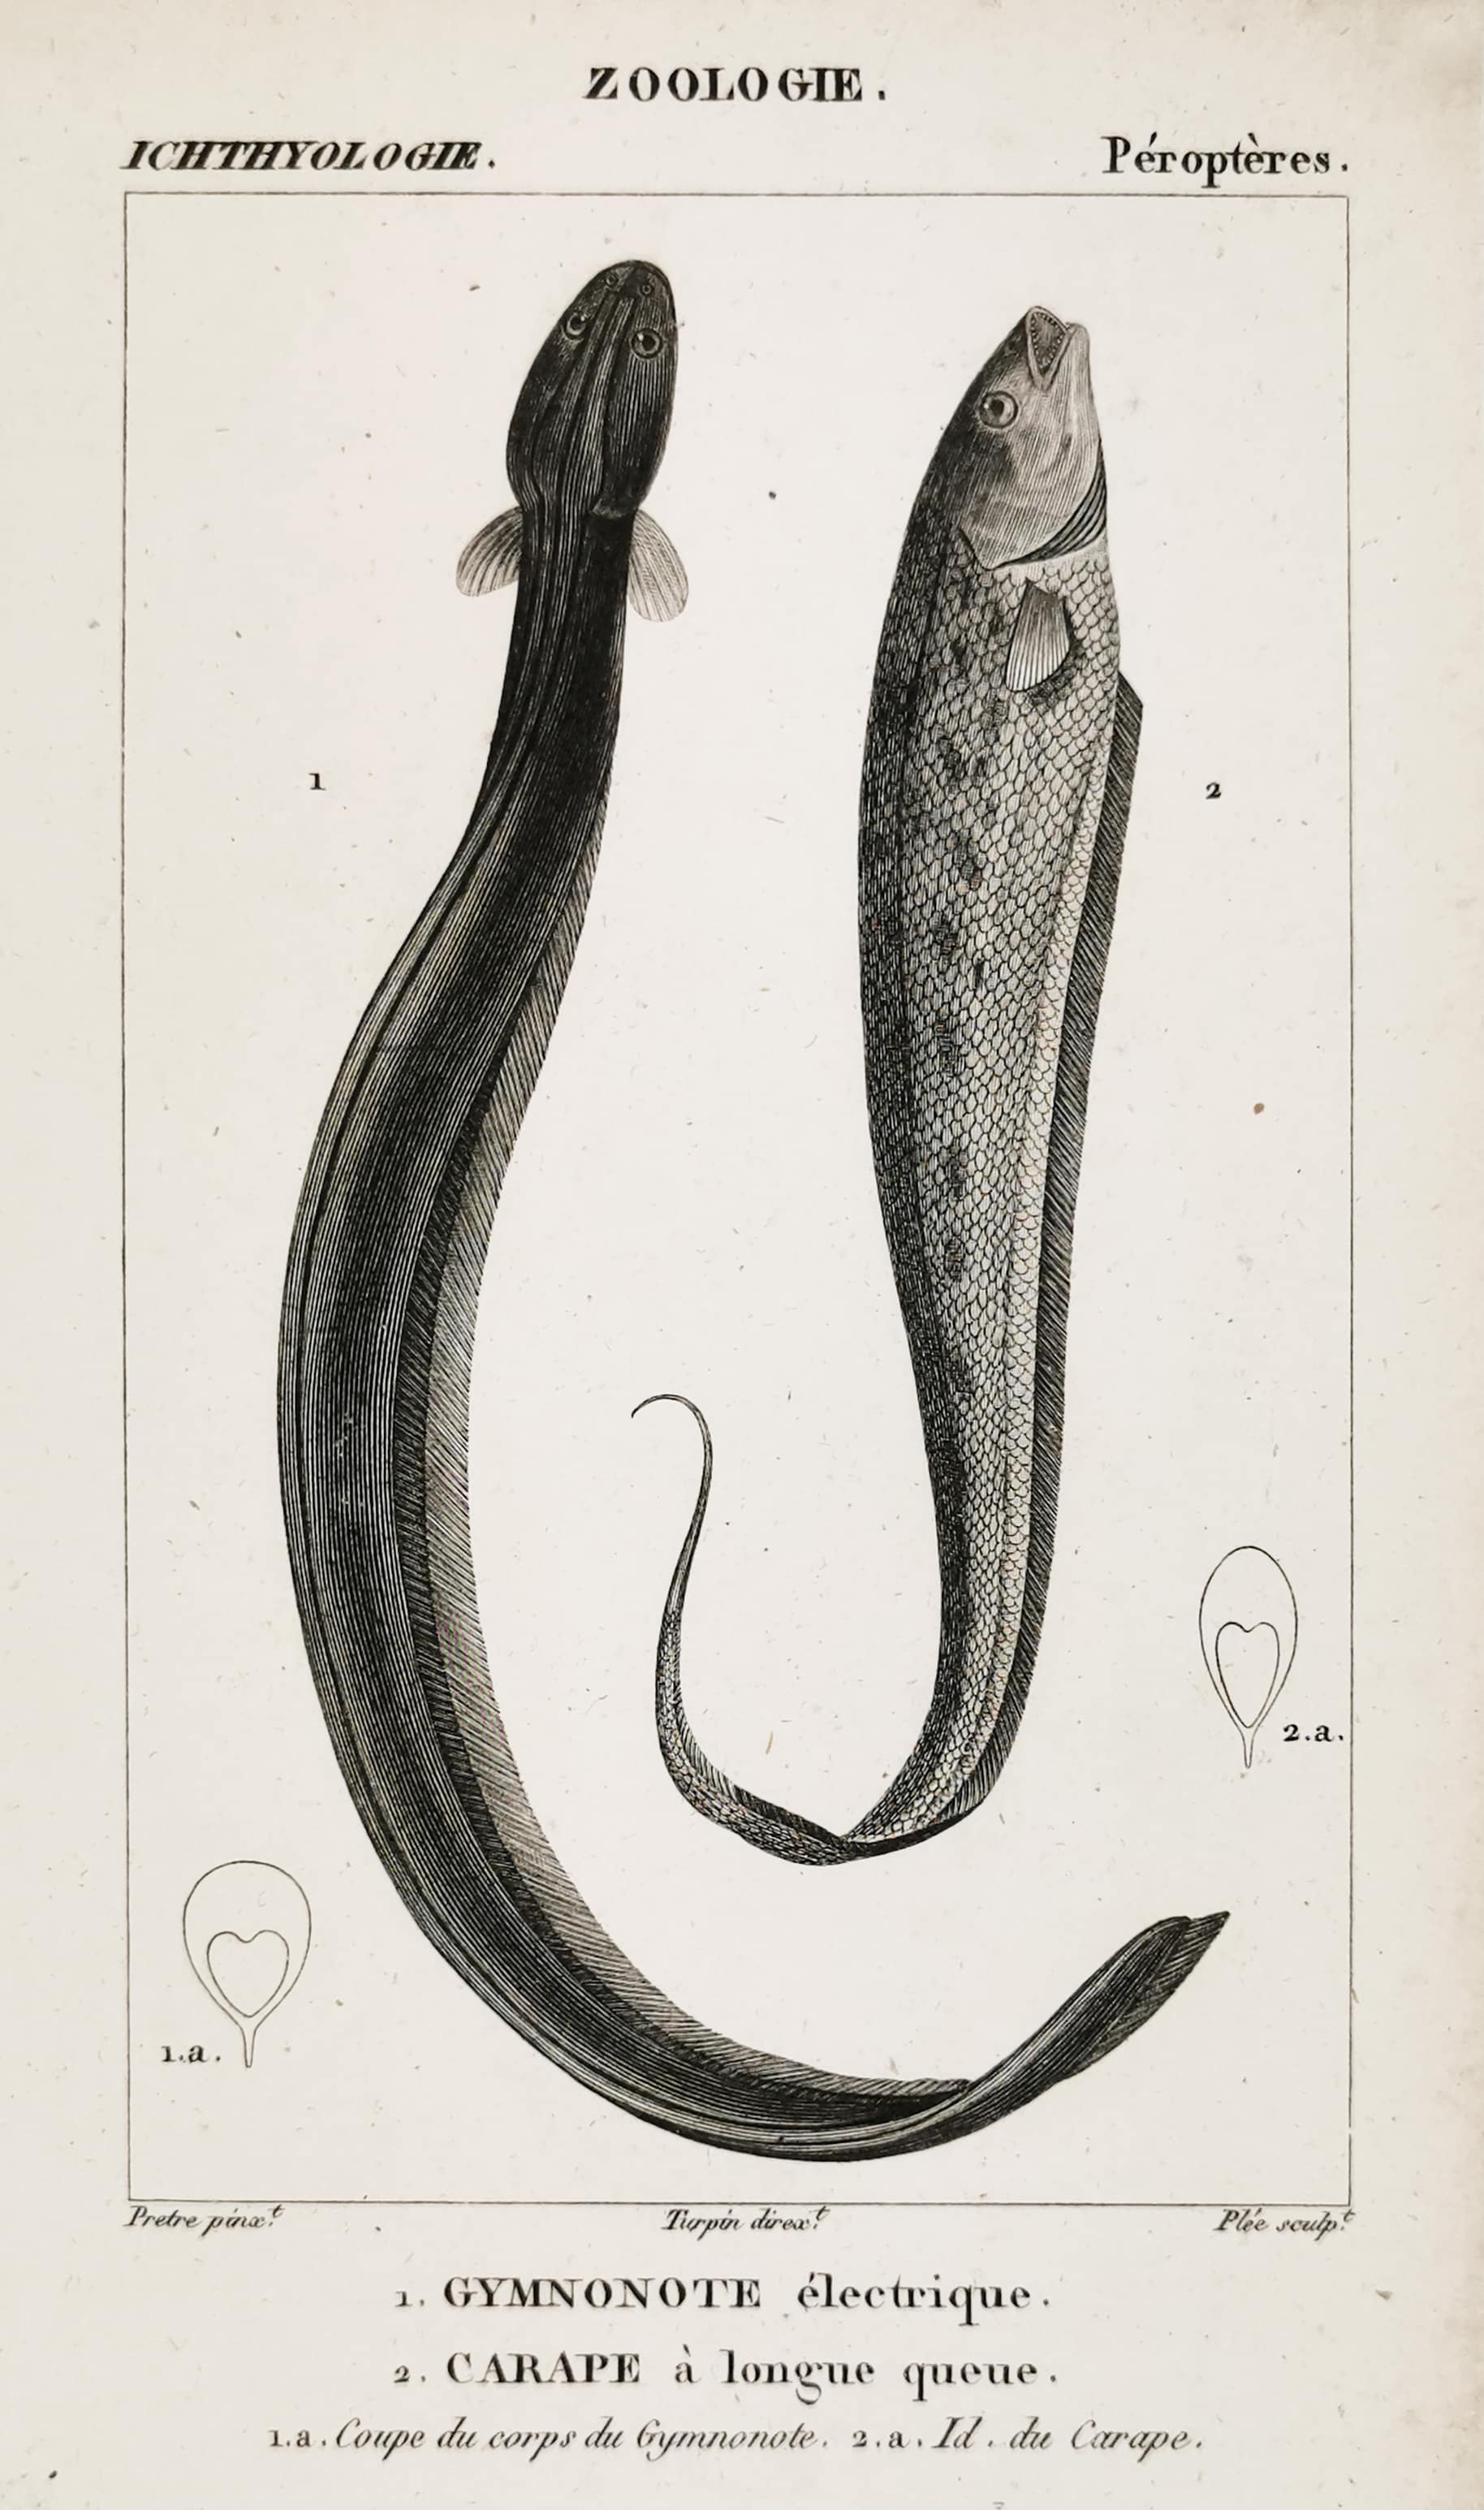 1. Gymnonote electrique. 2. Carape a longue queue. - Antique Print from 1816